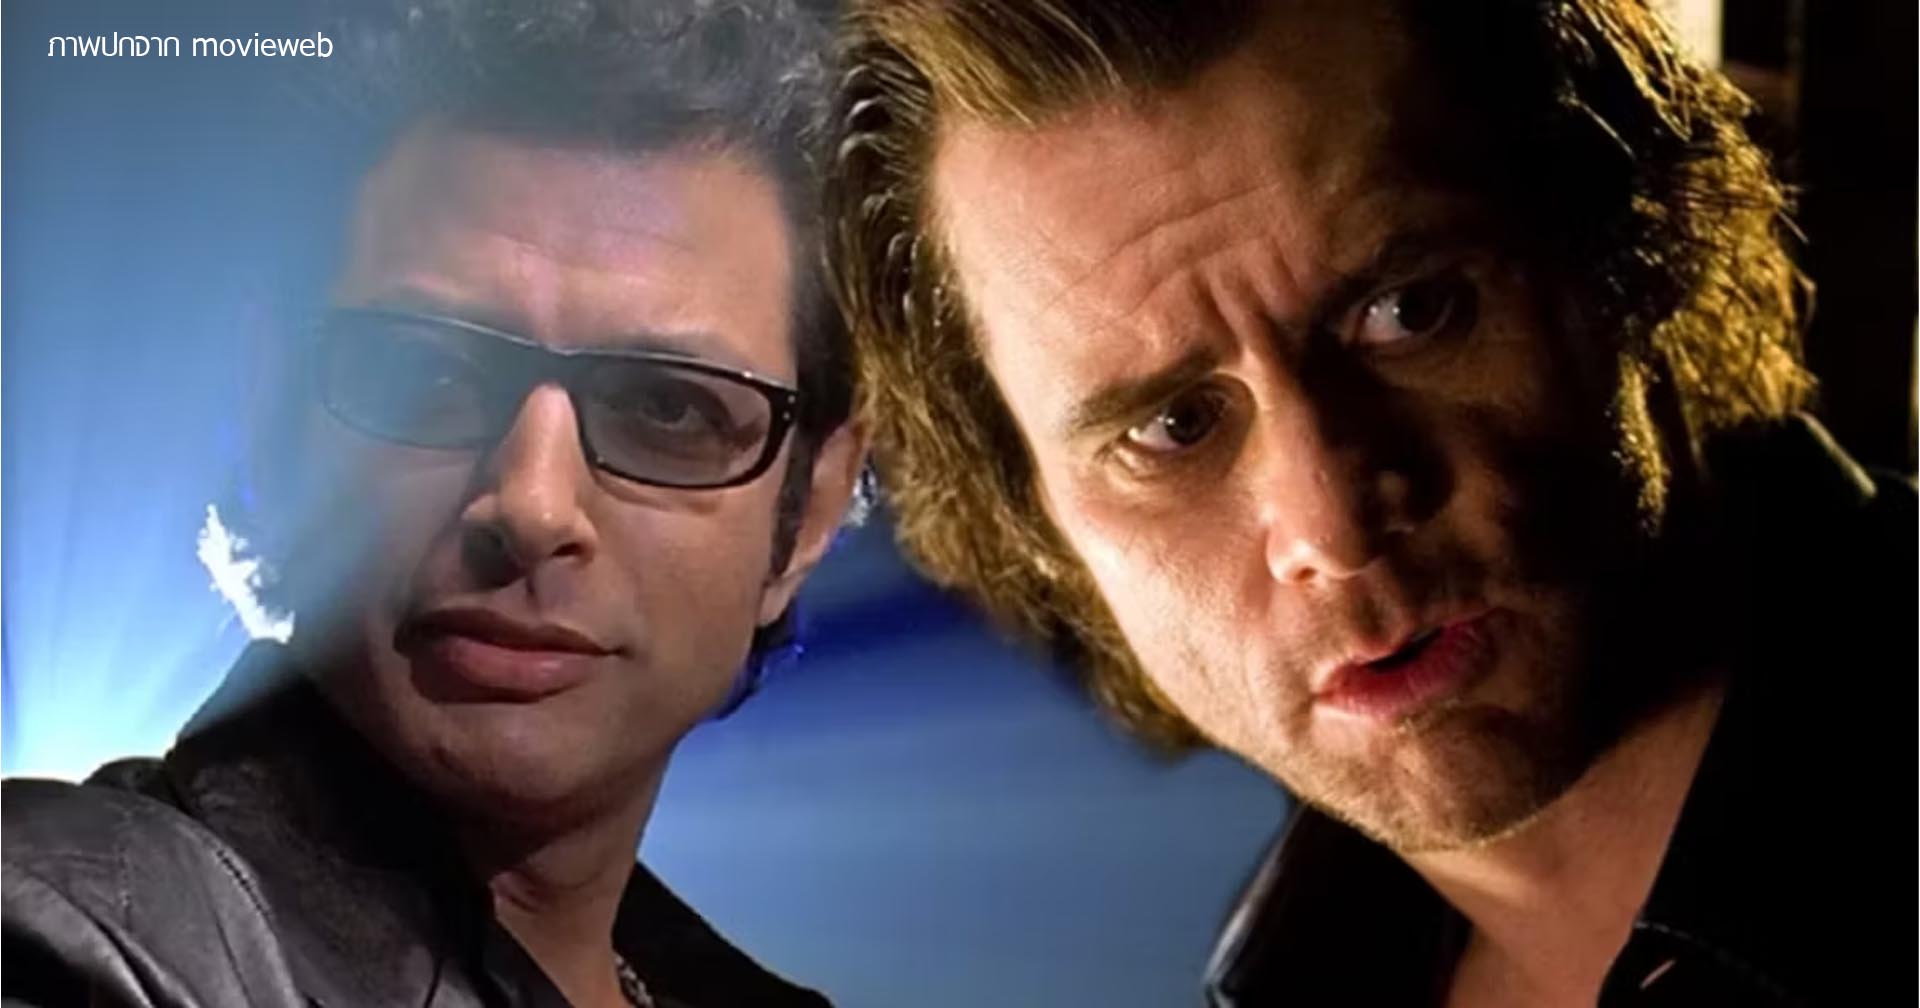 ผู้คัดเลือกนักแสดง Jurassic Park (1993) เผยว่า Jim Carey เกือบได้บท เอียน มัลคอล์ม ของ Jeff Goldblum ไปแล้ว